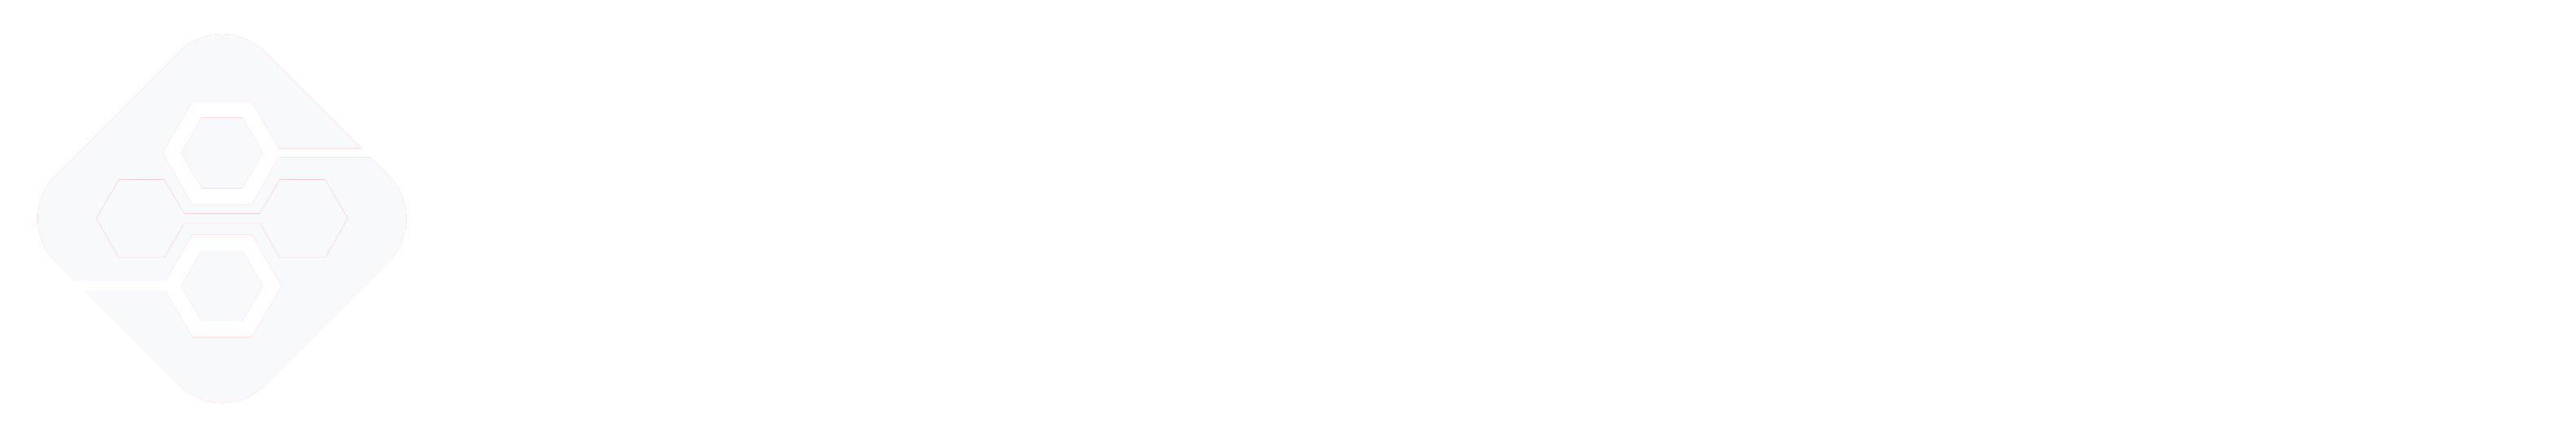 Knight Tech Logo Transparant zoom